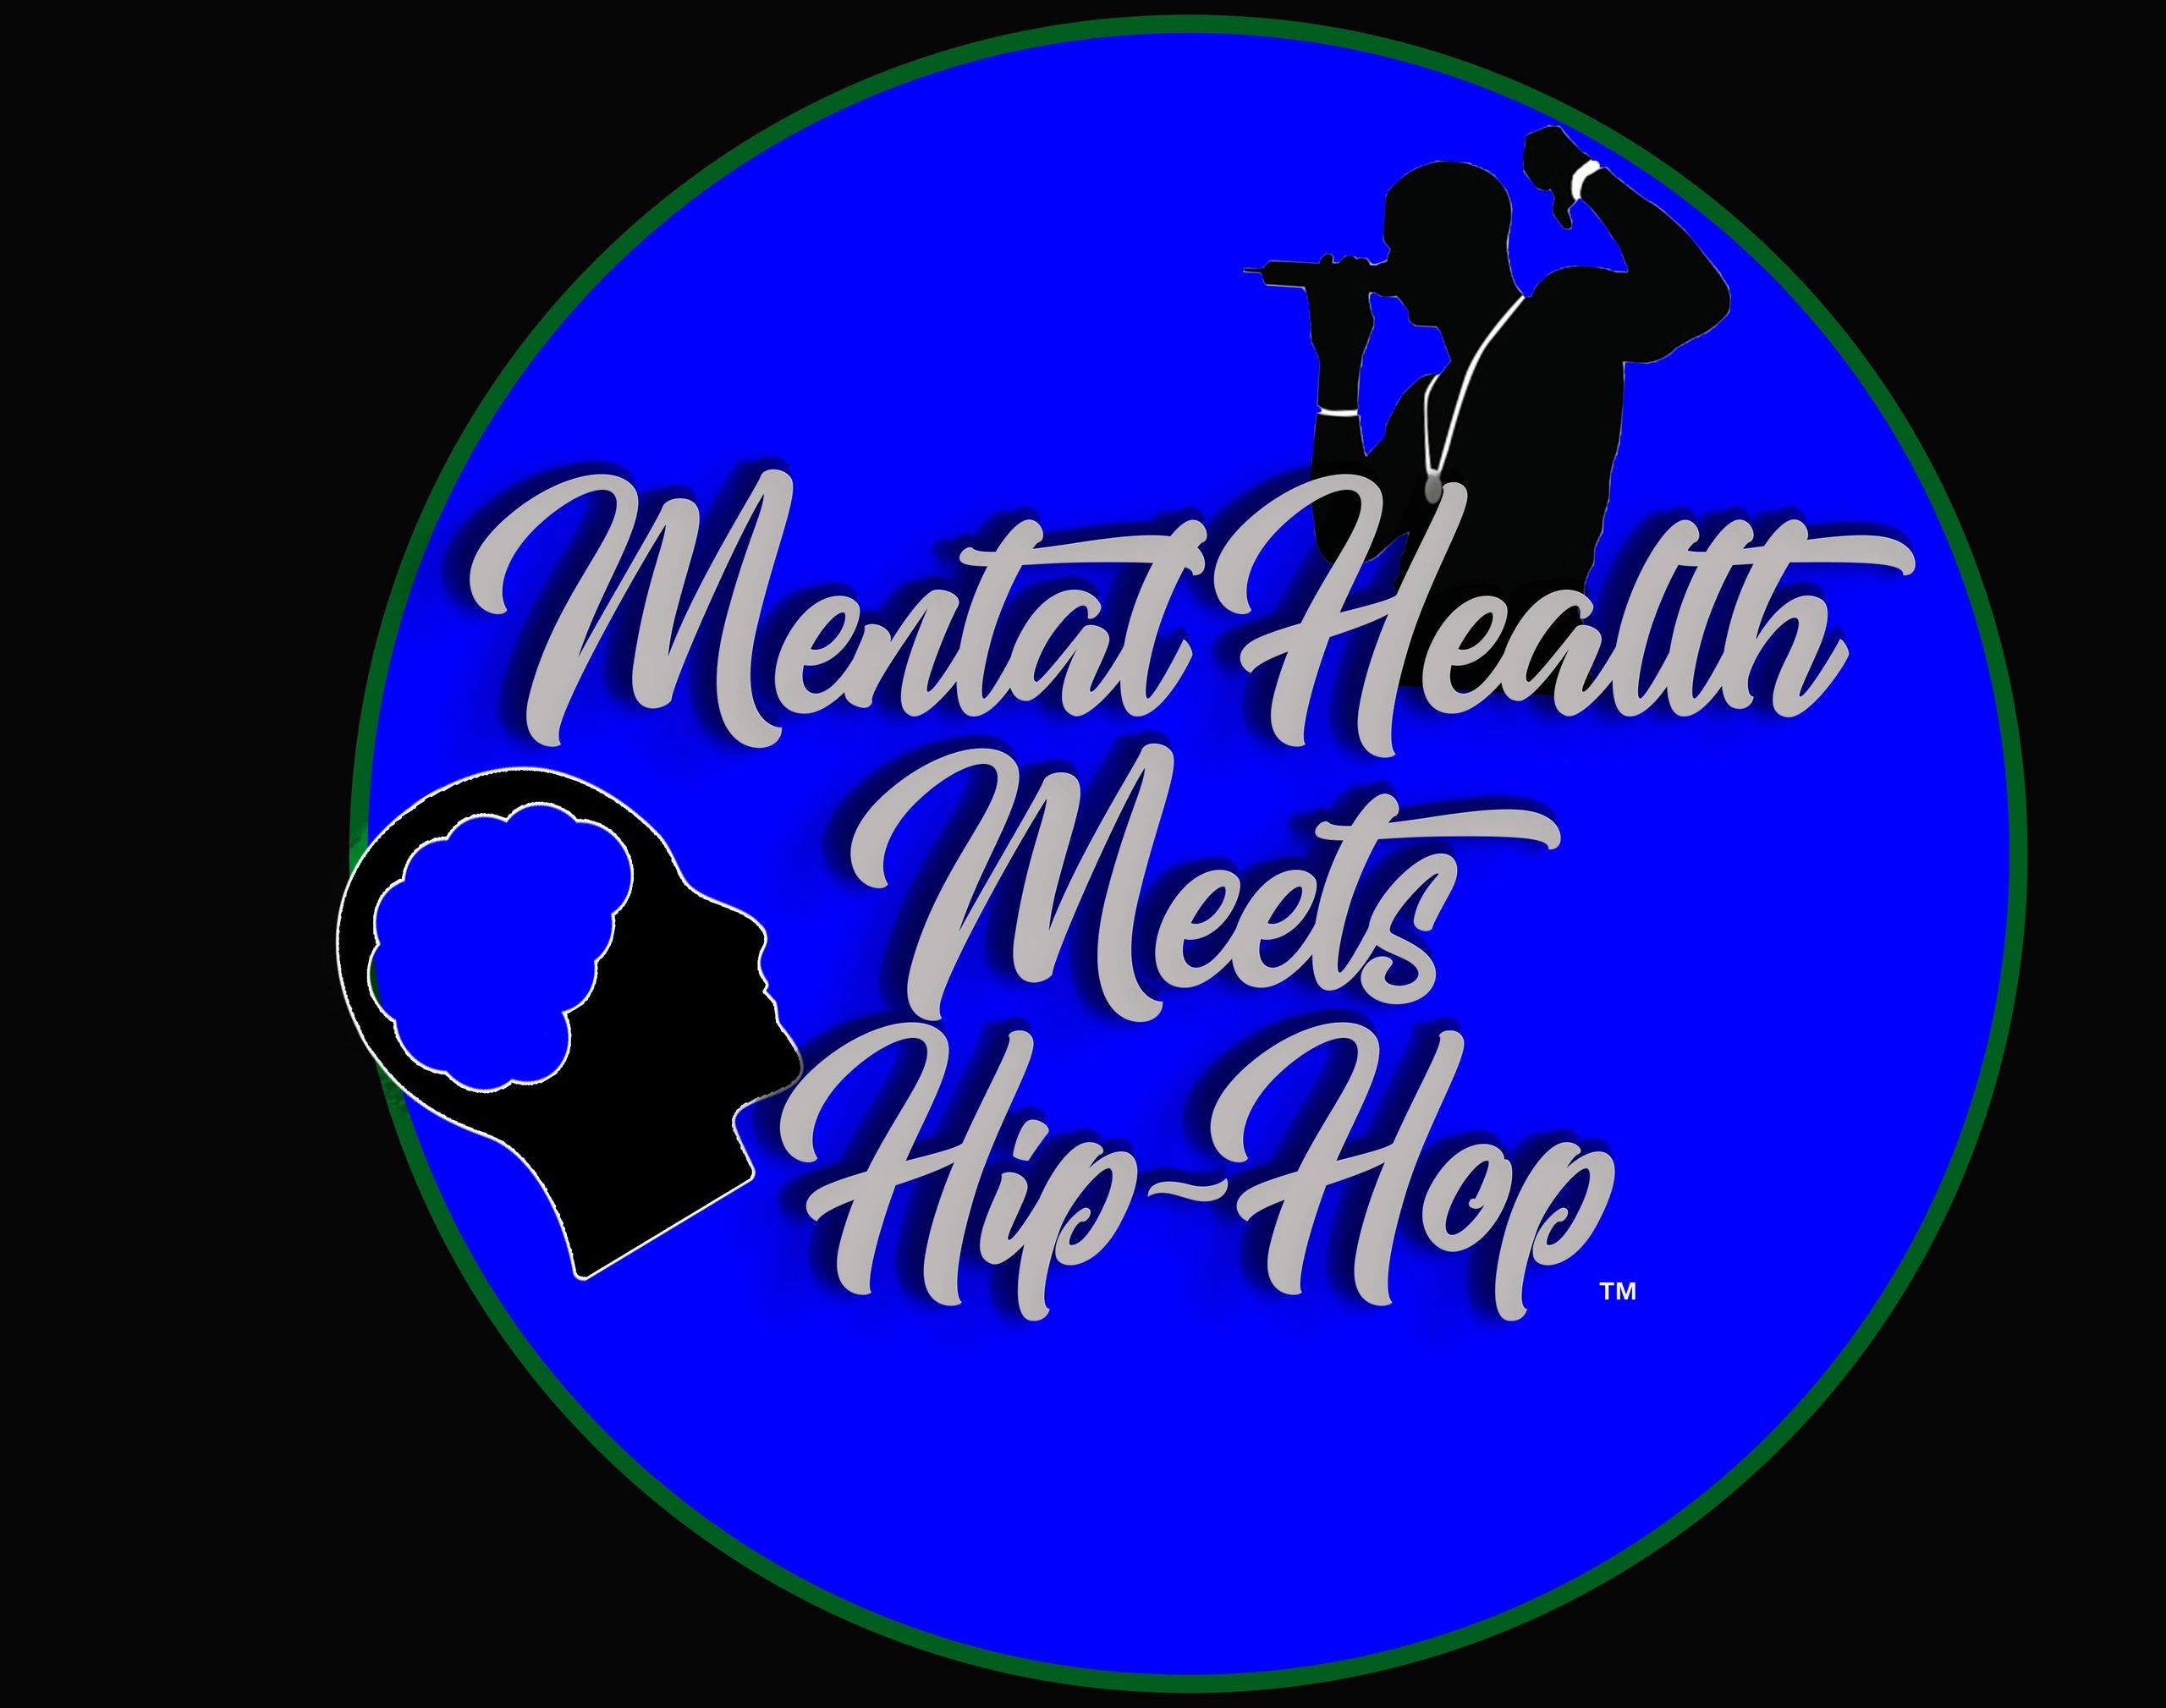 MENTAL HEALTH MEETS HIP-HOP